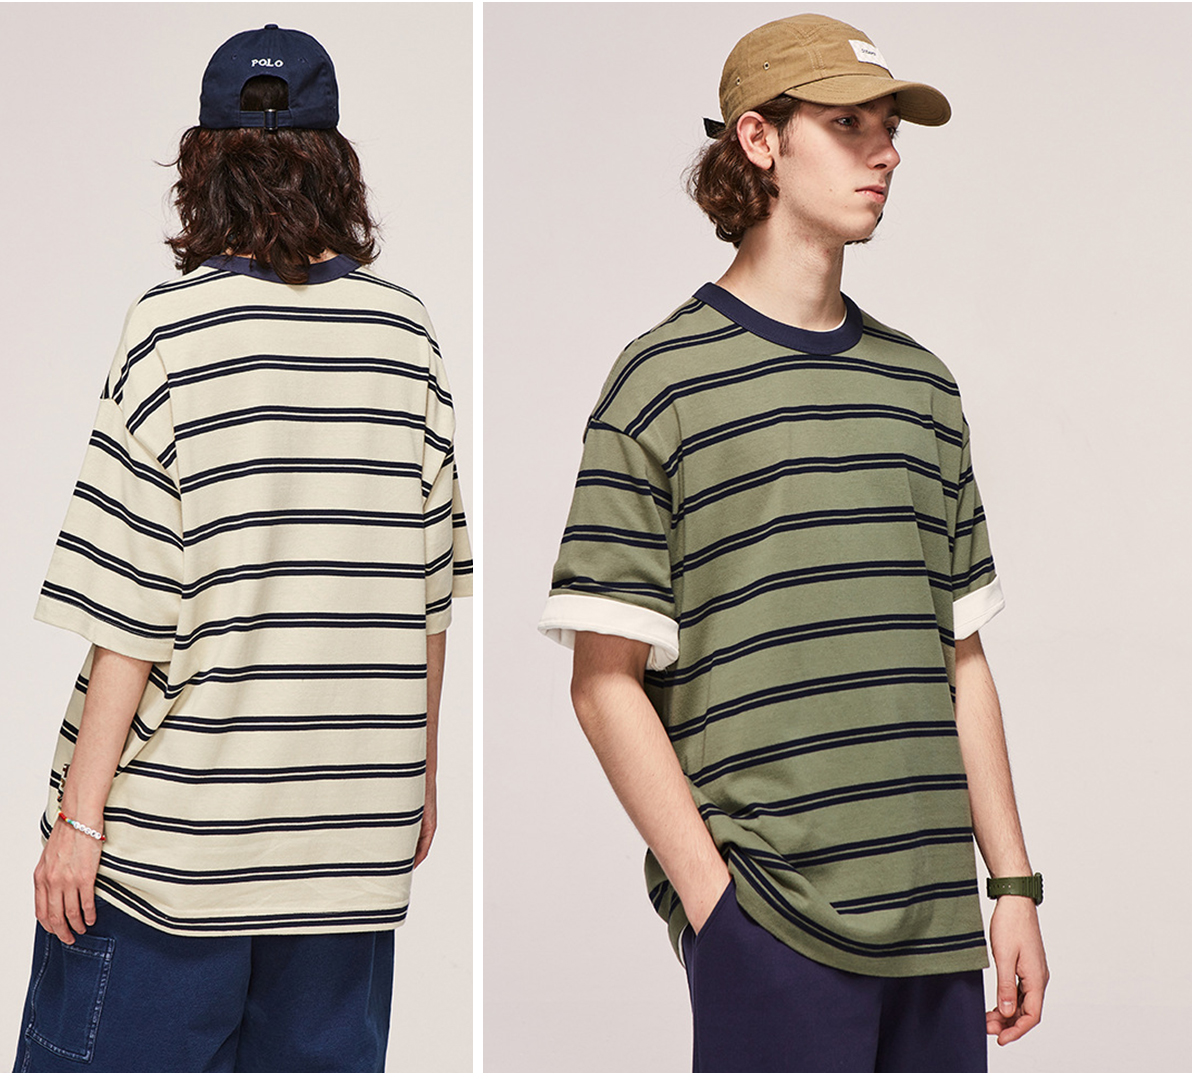 #2487S23 Retro Contrast Striped Oversized Short-Sleeved T-shirt For Men 20